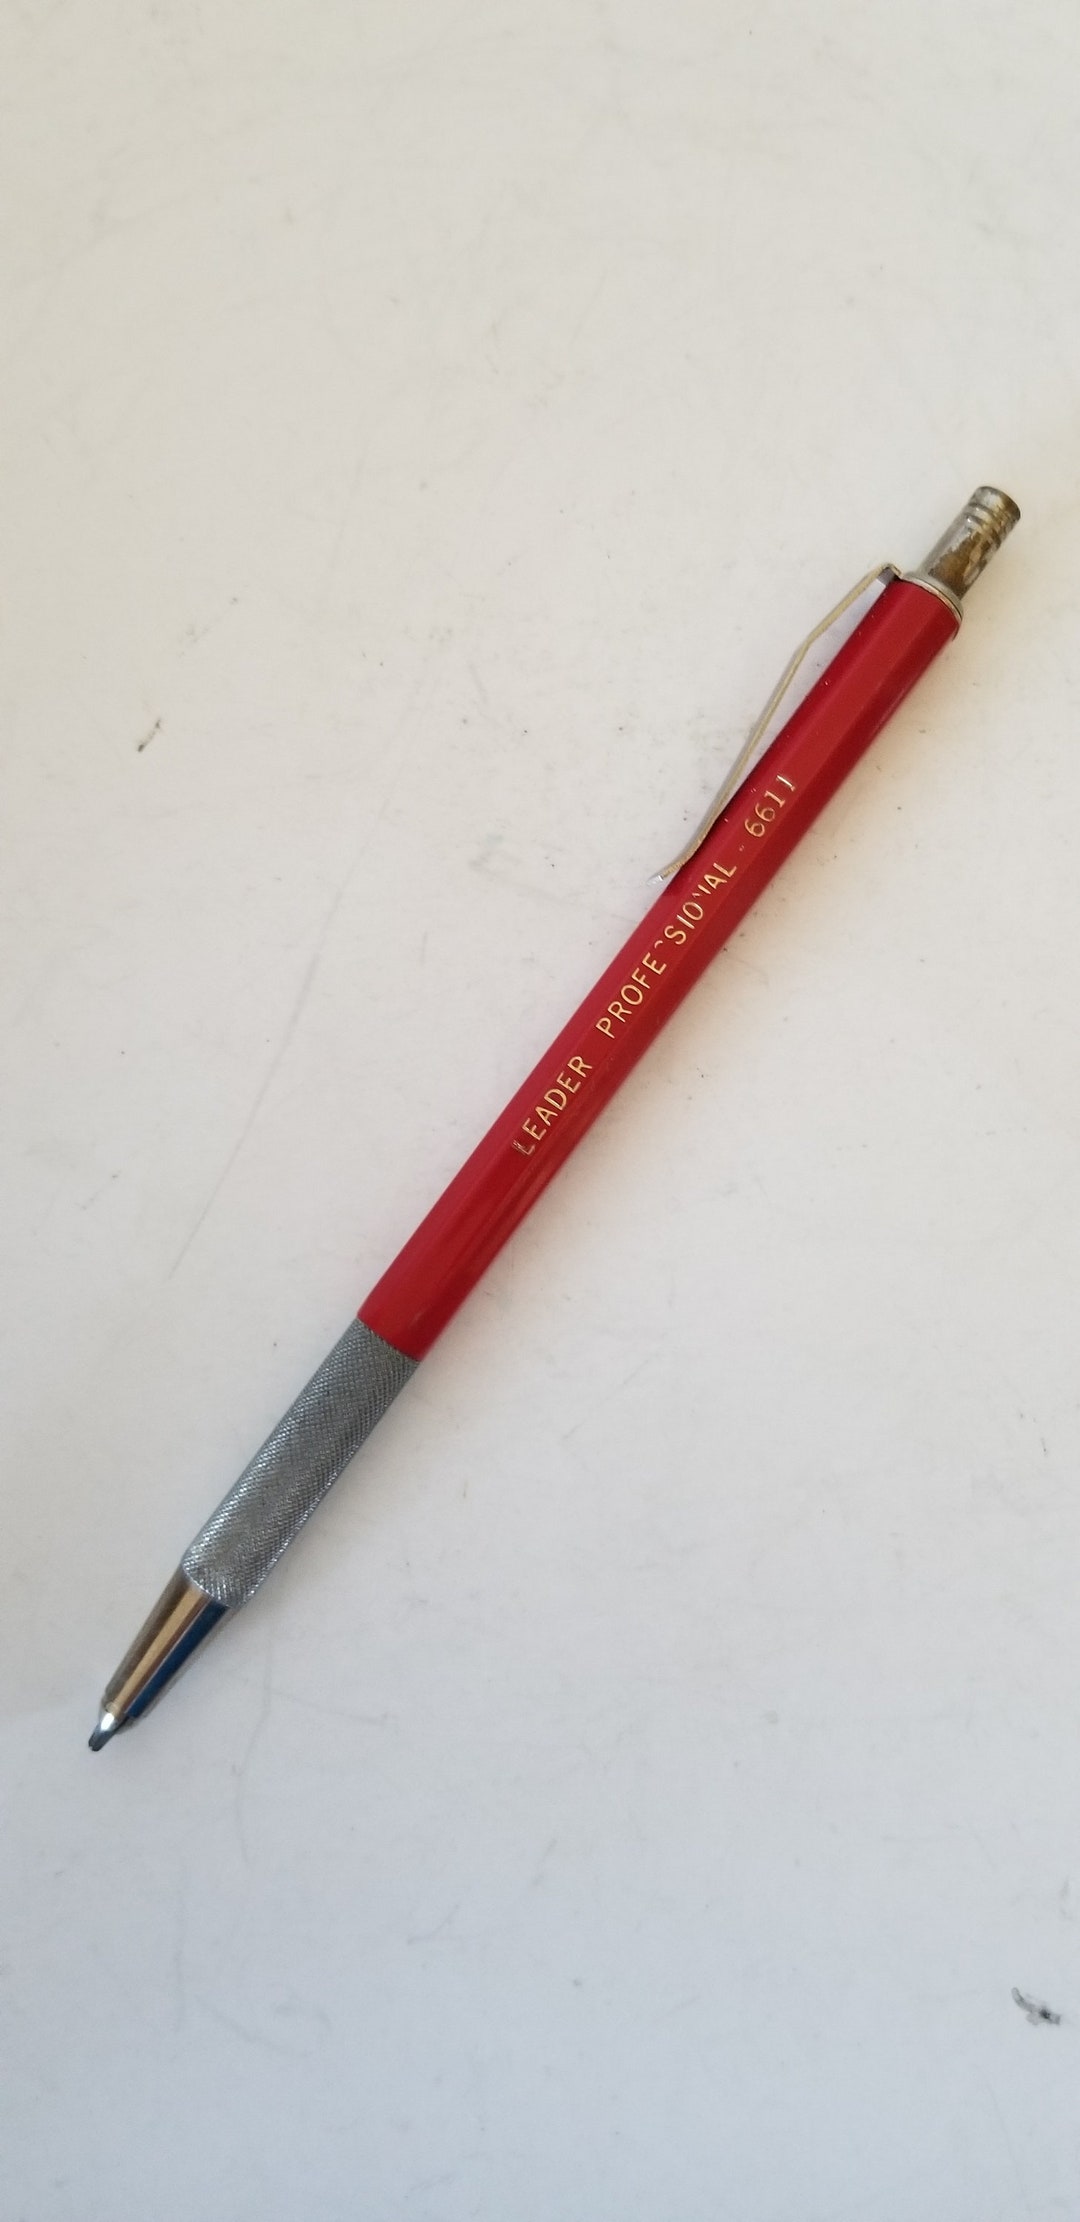 Short Mechanical Pencil KOH-I-NOOR 5306 5310 5344 Lead holder 5.6mm